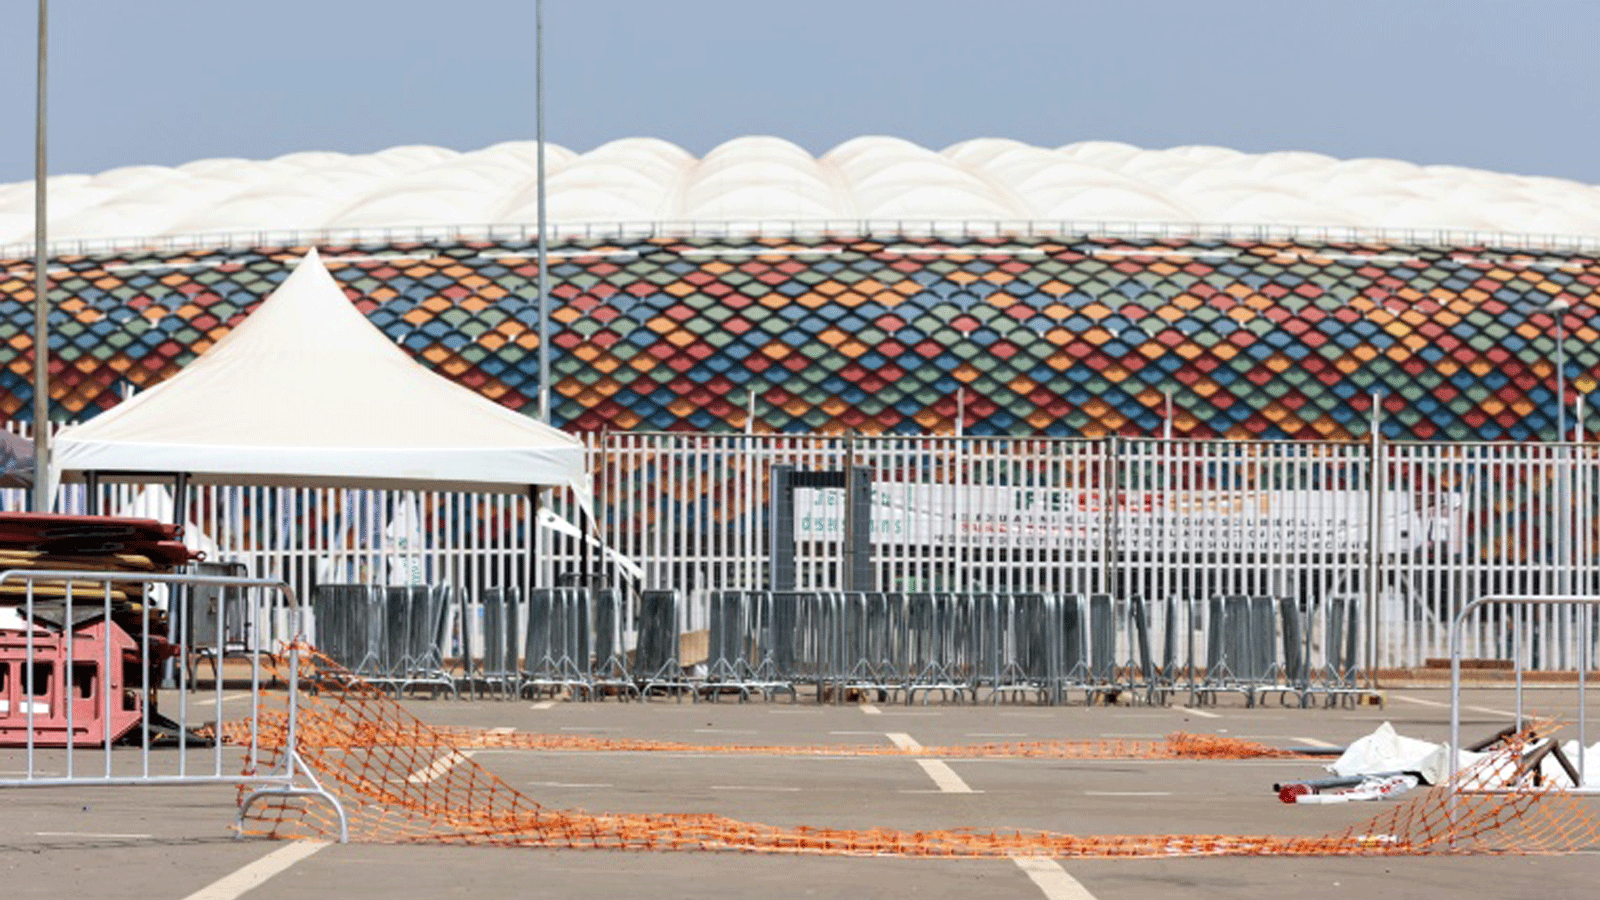 حادثة التدافع على أرض ملعب أوليمبي في العاصمة الكاميرونية ياوندي في 24 كانون الثاني/يناير 2022 قبل مباراة في كأس أمم أفريقيا لكرة القدم أدت إلى وفاة 8 أشخاص